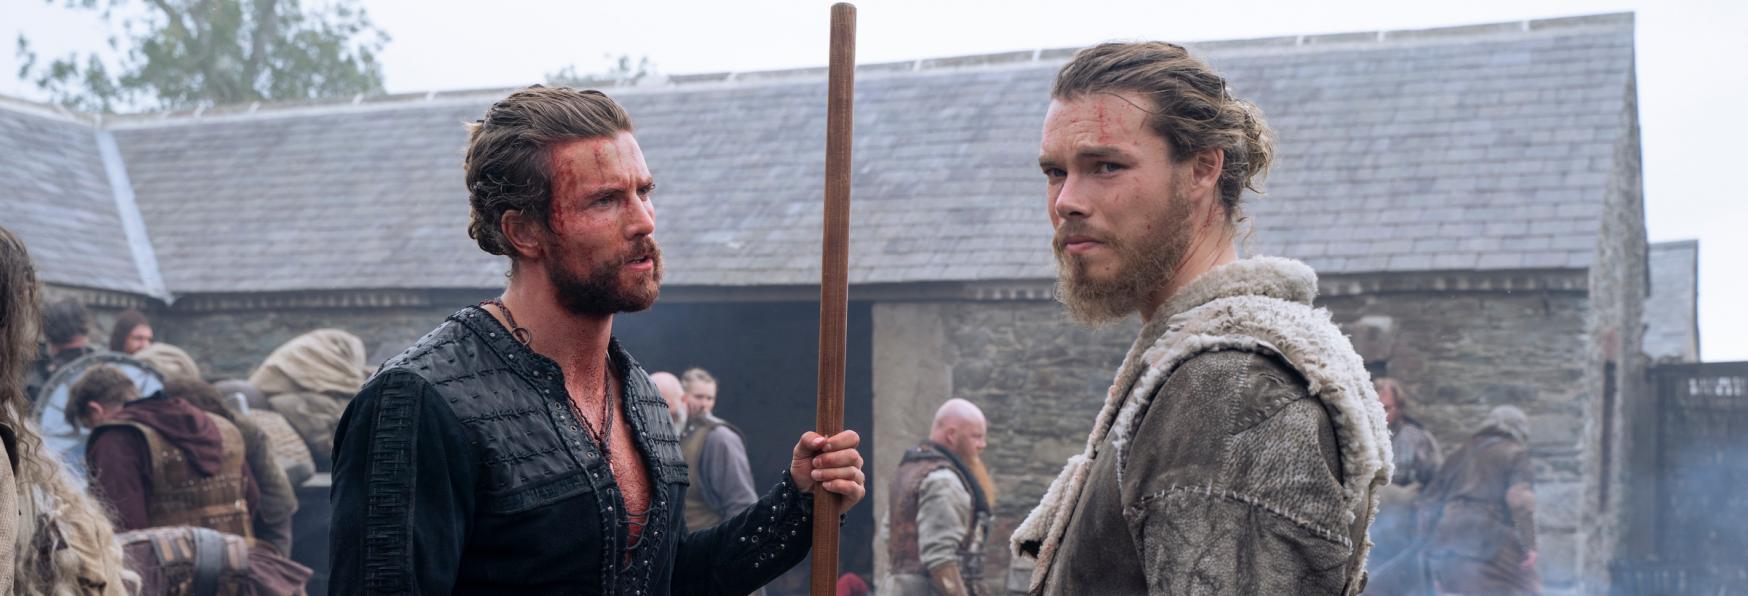 Vikings: Valhalla - Trama, Cast, Produzione, Approfondimenti, Curiosità, Data di Uscita e Trailer della Serie TV di Netflix